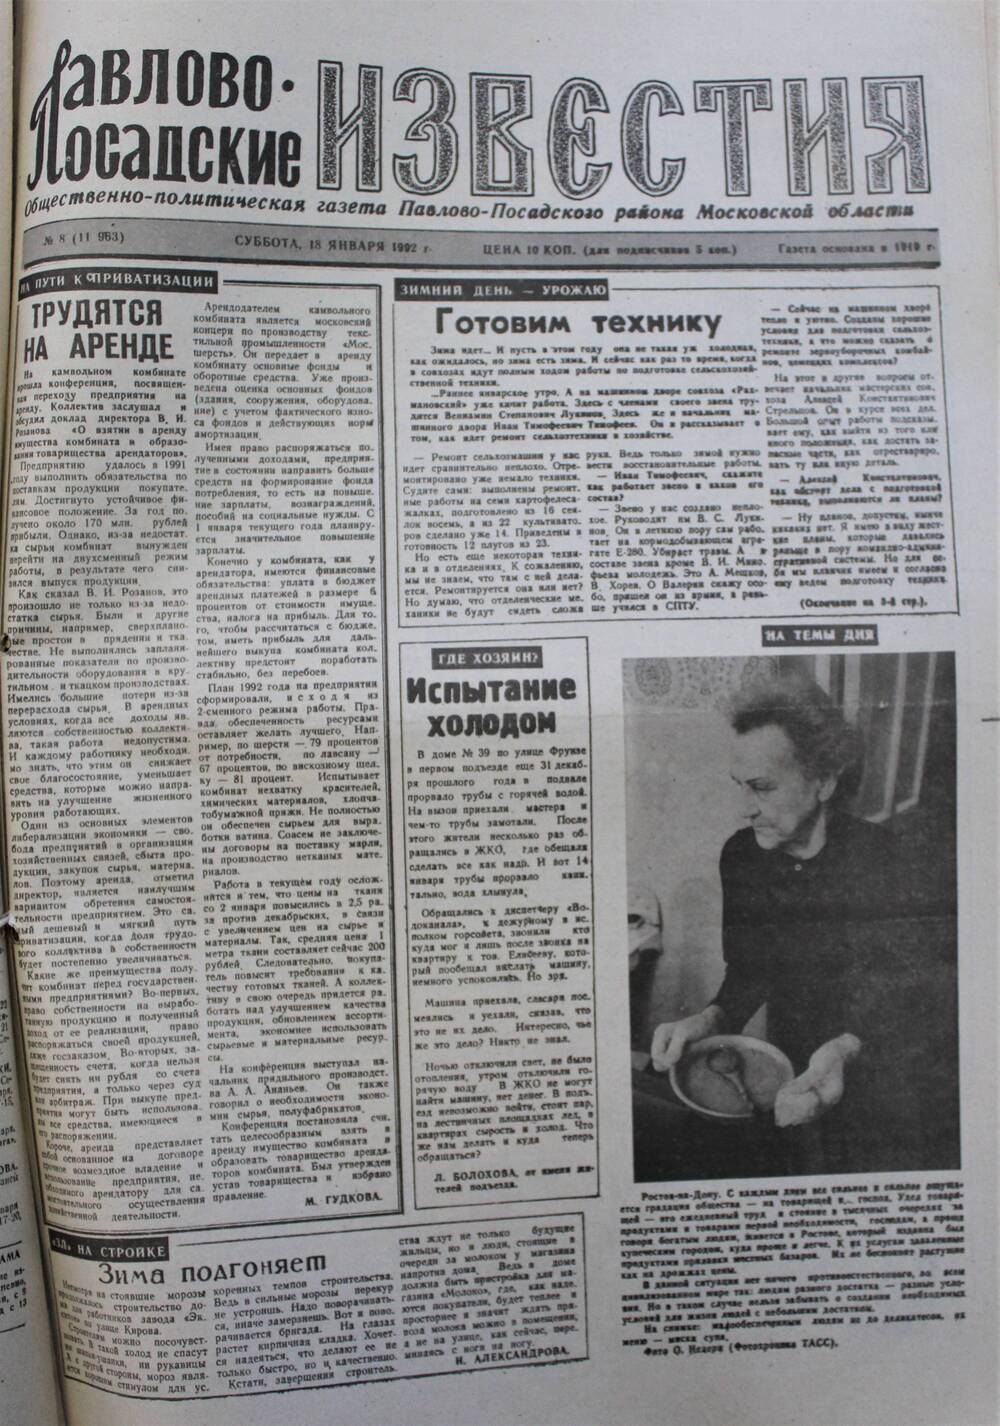 Газета Павлово-Посадские известия № 8 (11963)  от 18 января 1992 г.